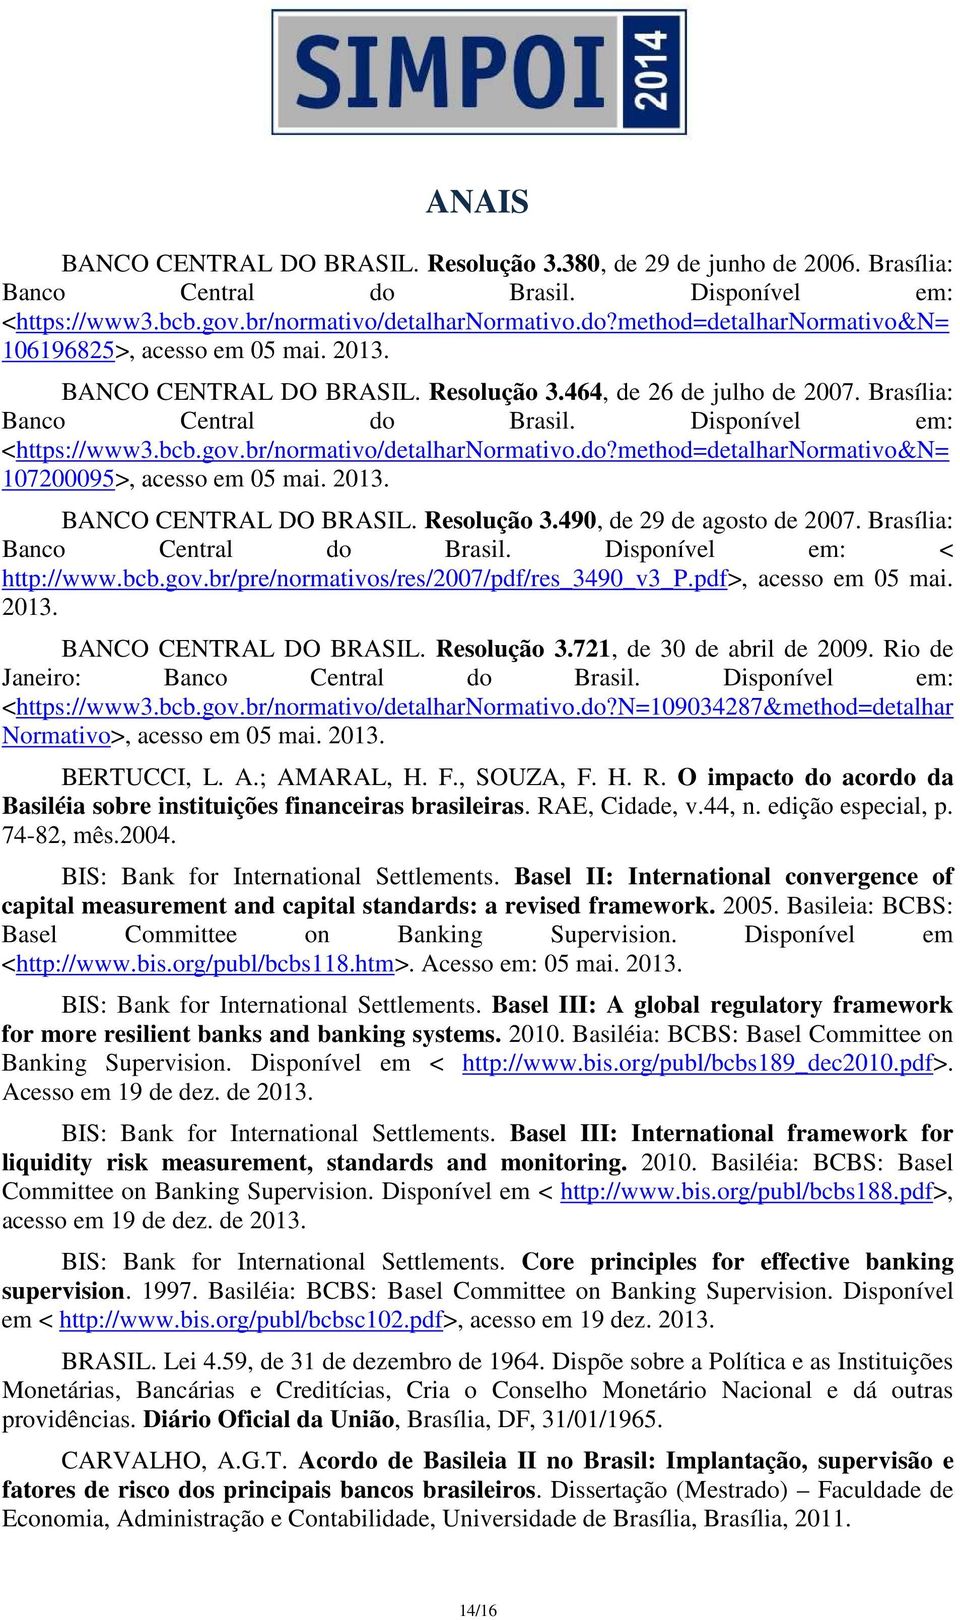 2013. BANCO CENTRAL DO BRASIL. Resolução 3.490, de 29 de agosto de 2007. Brasília: Banco Central do Brasil. Disponível em: < http://www.bcb.gov.br/pre/normativos/res/2007/pdf/res_3490_v3_p.